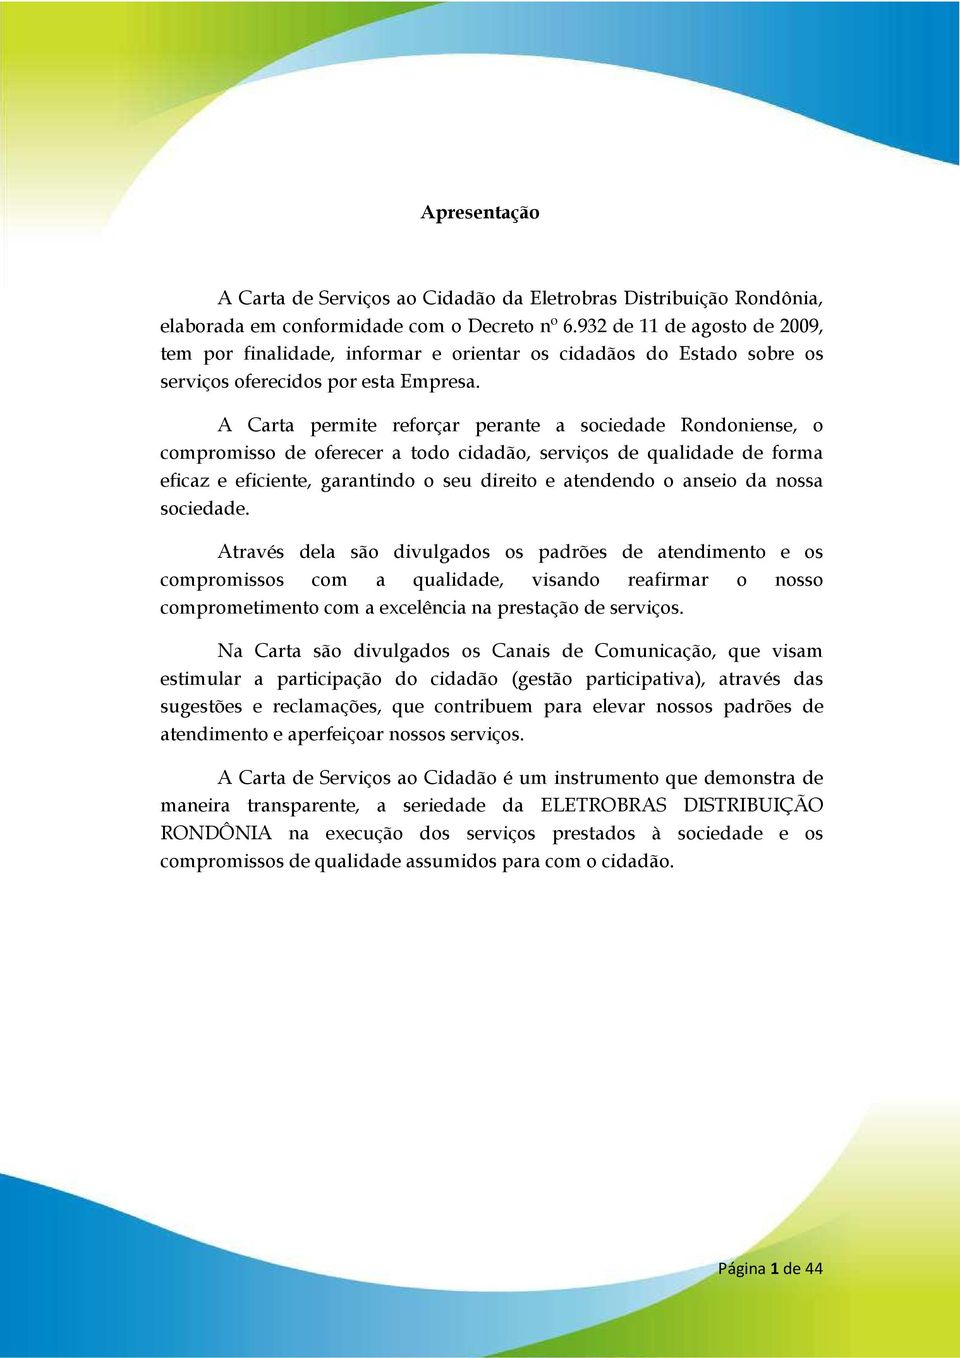 A Carta permite reforçar perante a sociedade Rondoniense, o compromisso de oferecer a todo cidadão, serviços de qualidade de forma eficaz e eficiente, garantindo o seu direito e atendendo o anseio da